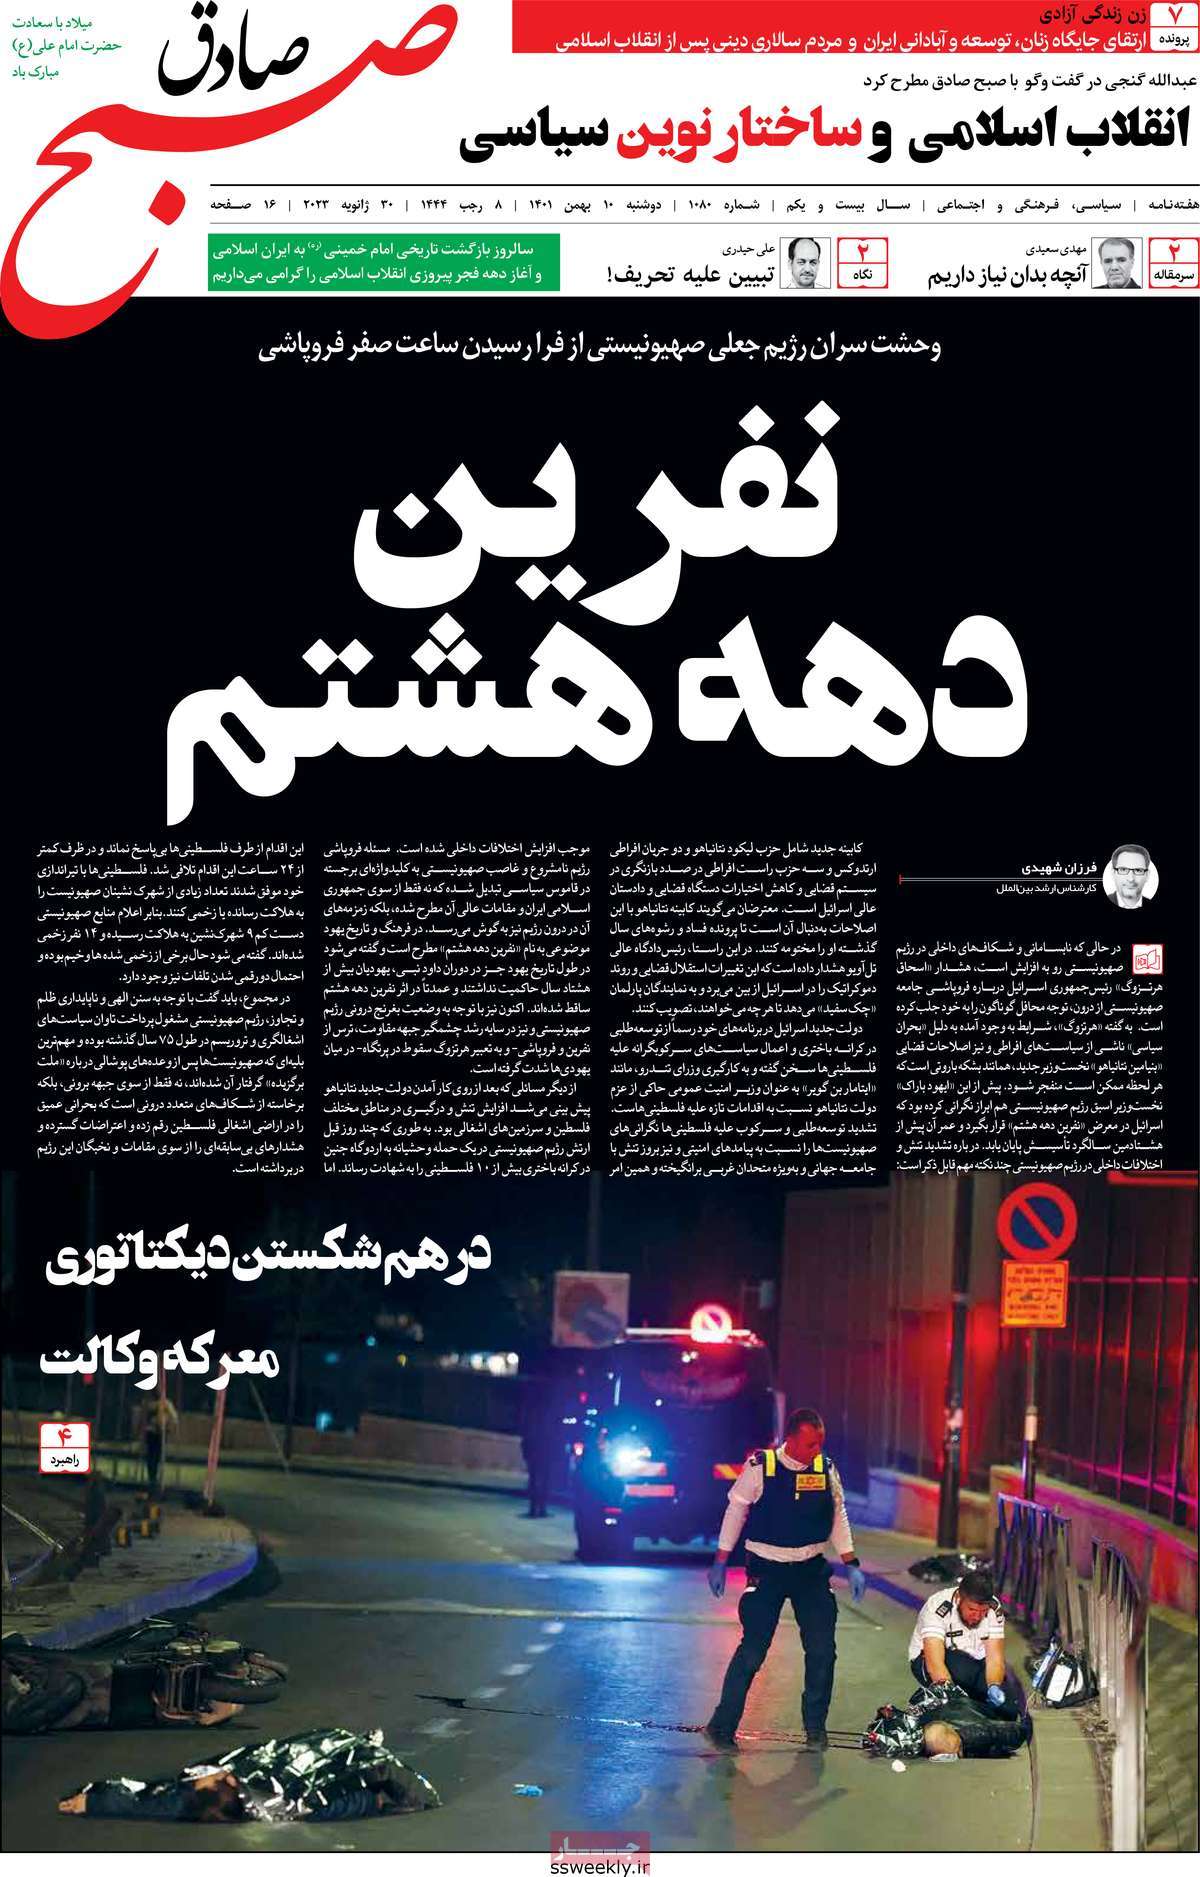 صفحه نخست مجله صبح صادق - دوشنبه, ۱۰ بهمن ۱۴۰۱